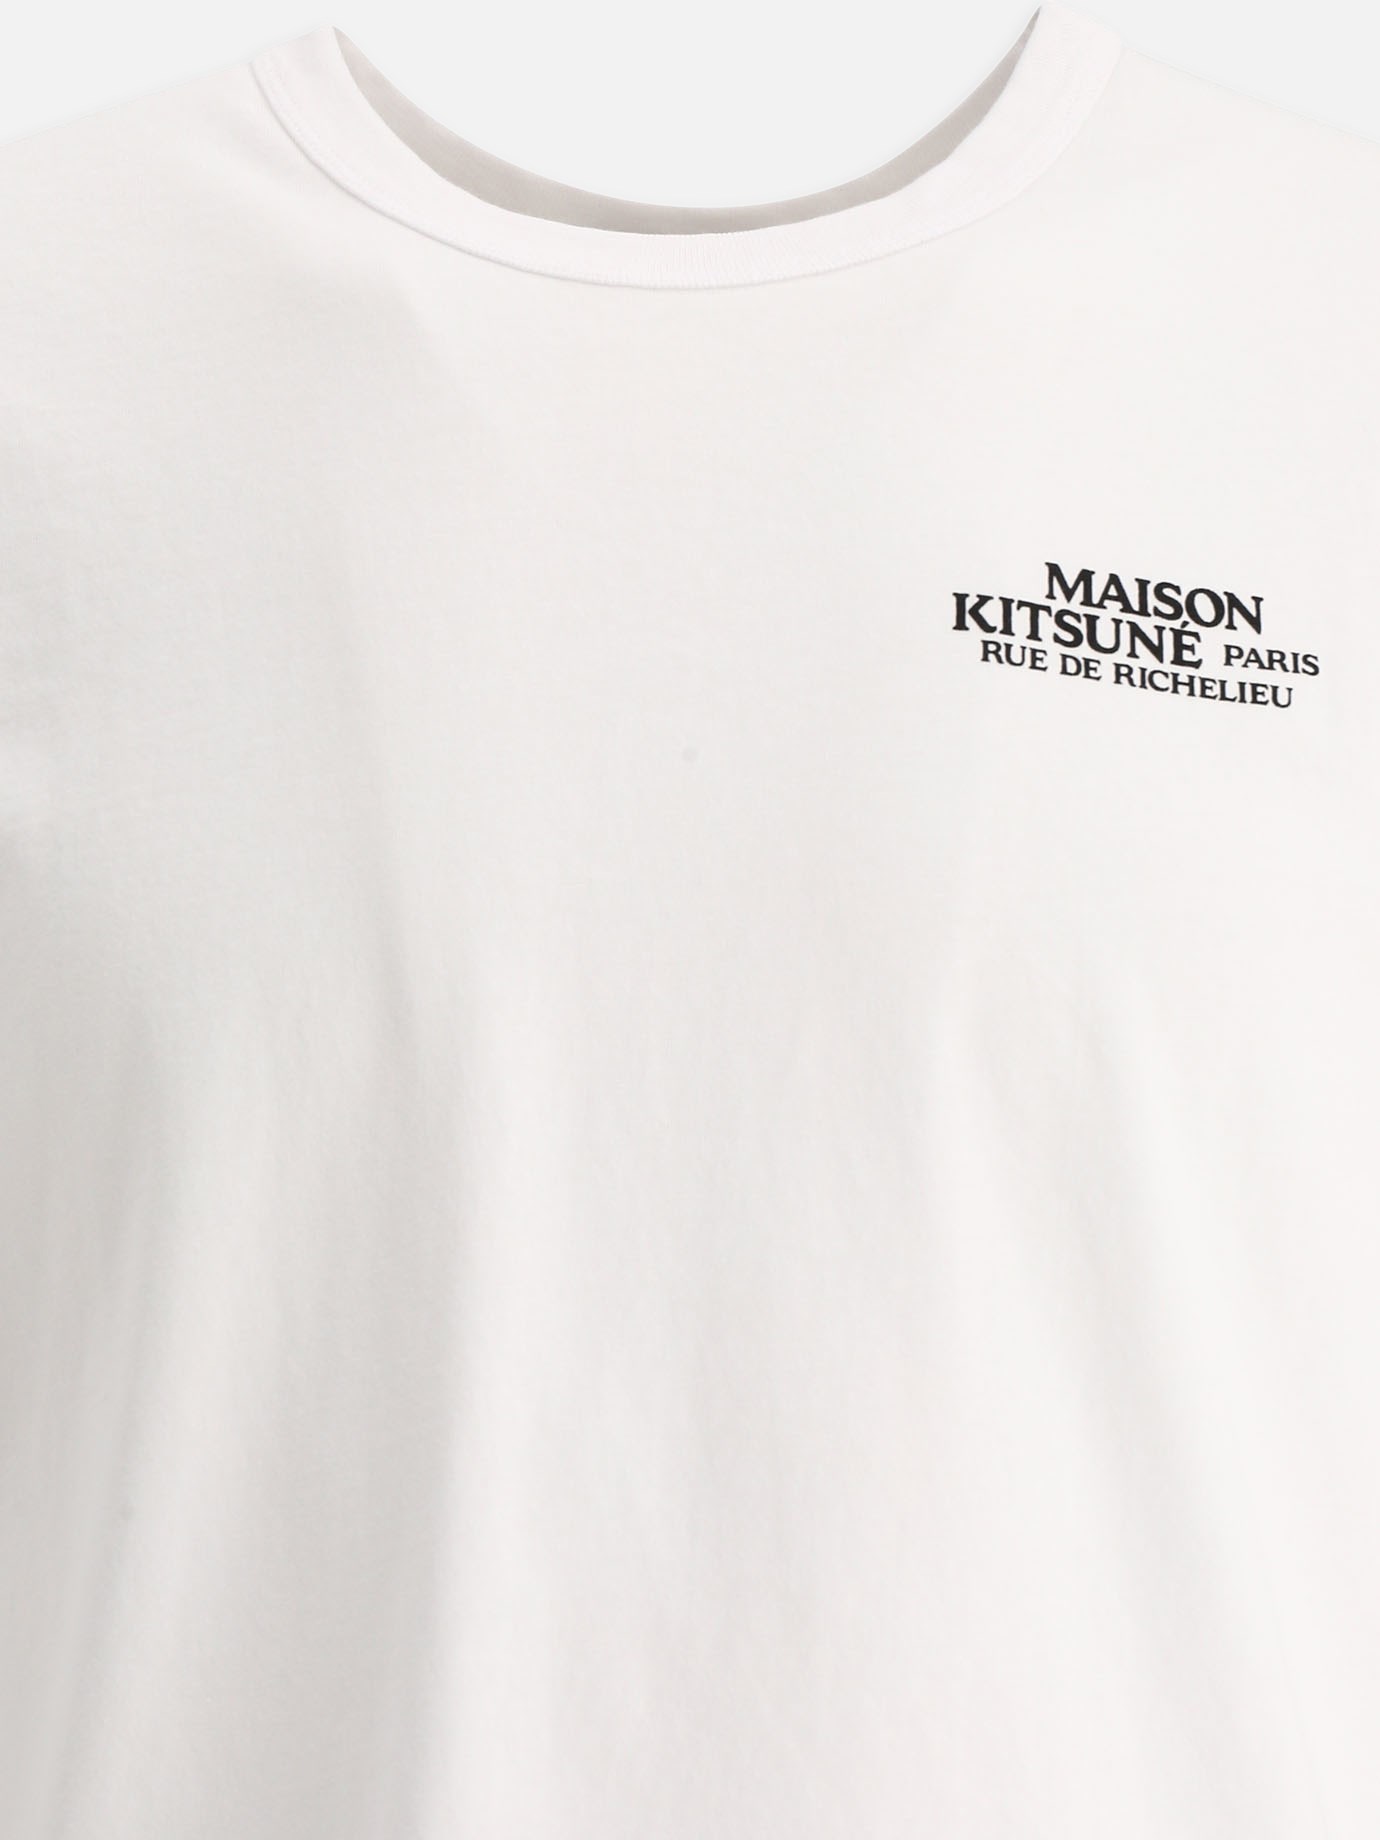 T-shirt  Rue de Richelieu  by Maison Kitsuné